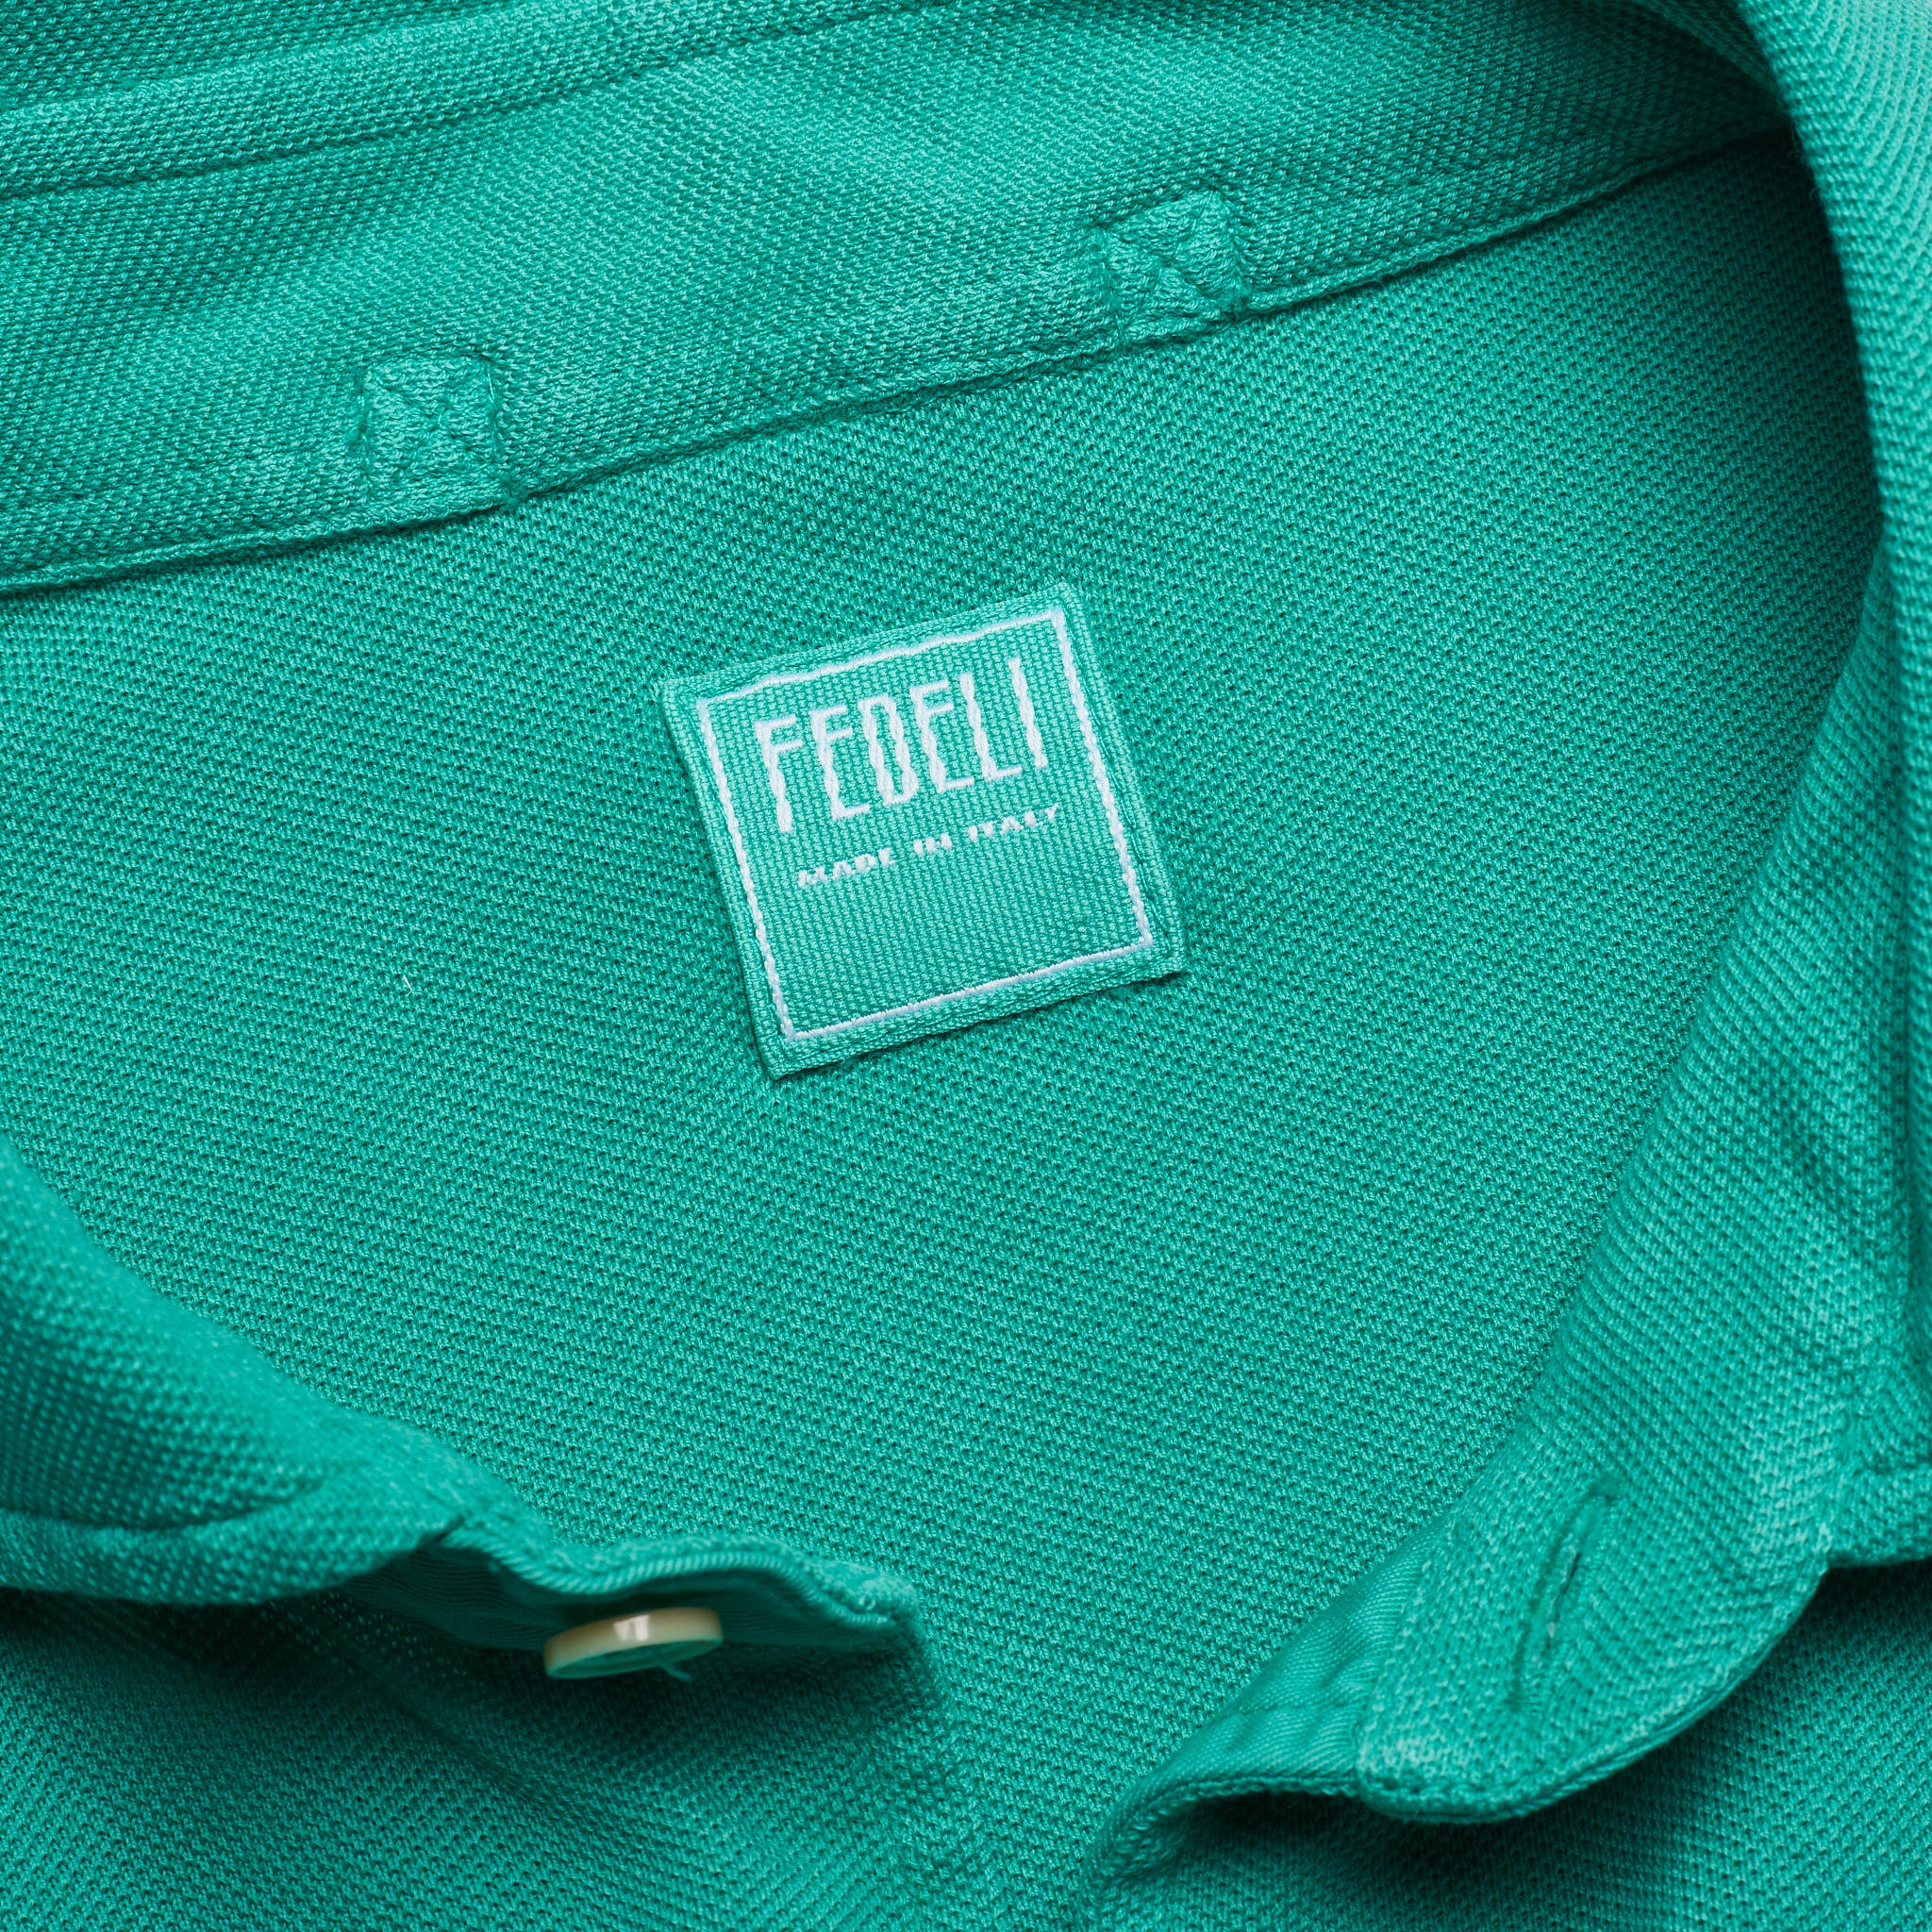 FEDELI Emerald Green Cotton Pique Long Sleeve Polo Shirt EU 48 NEW US S